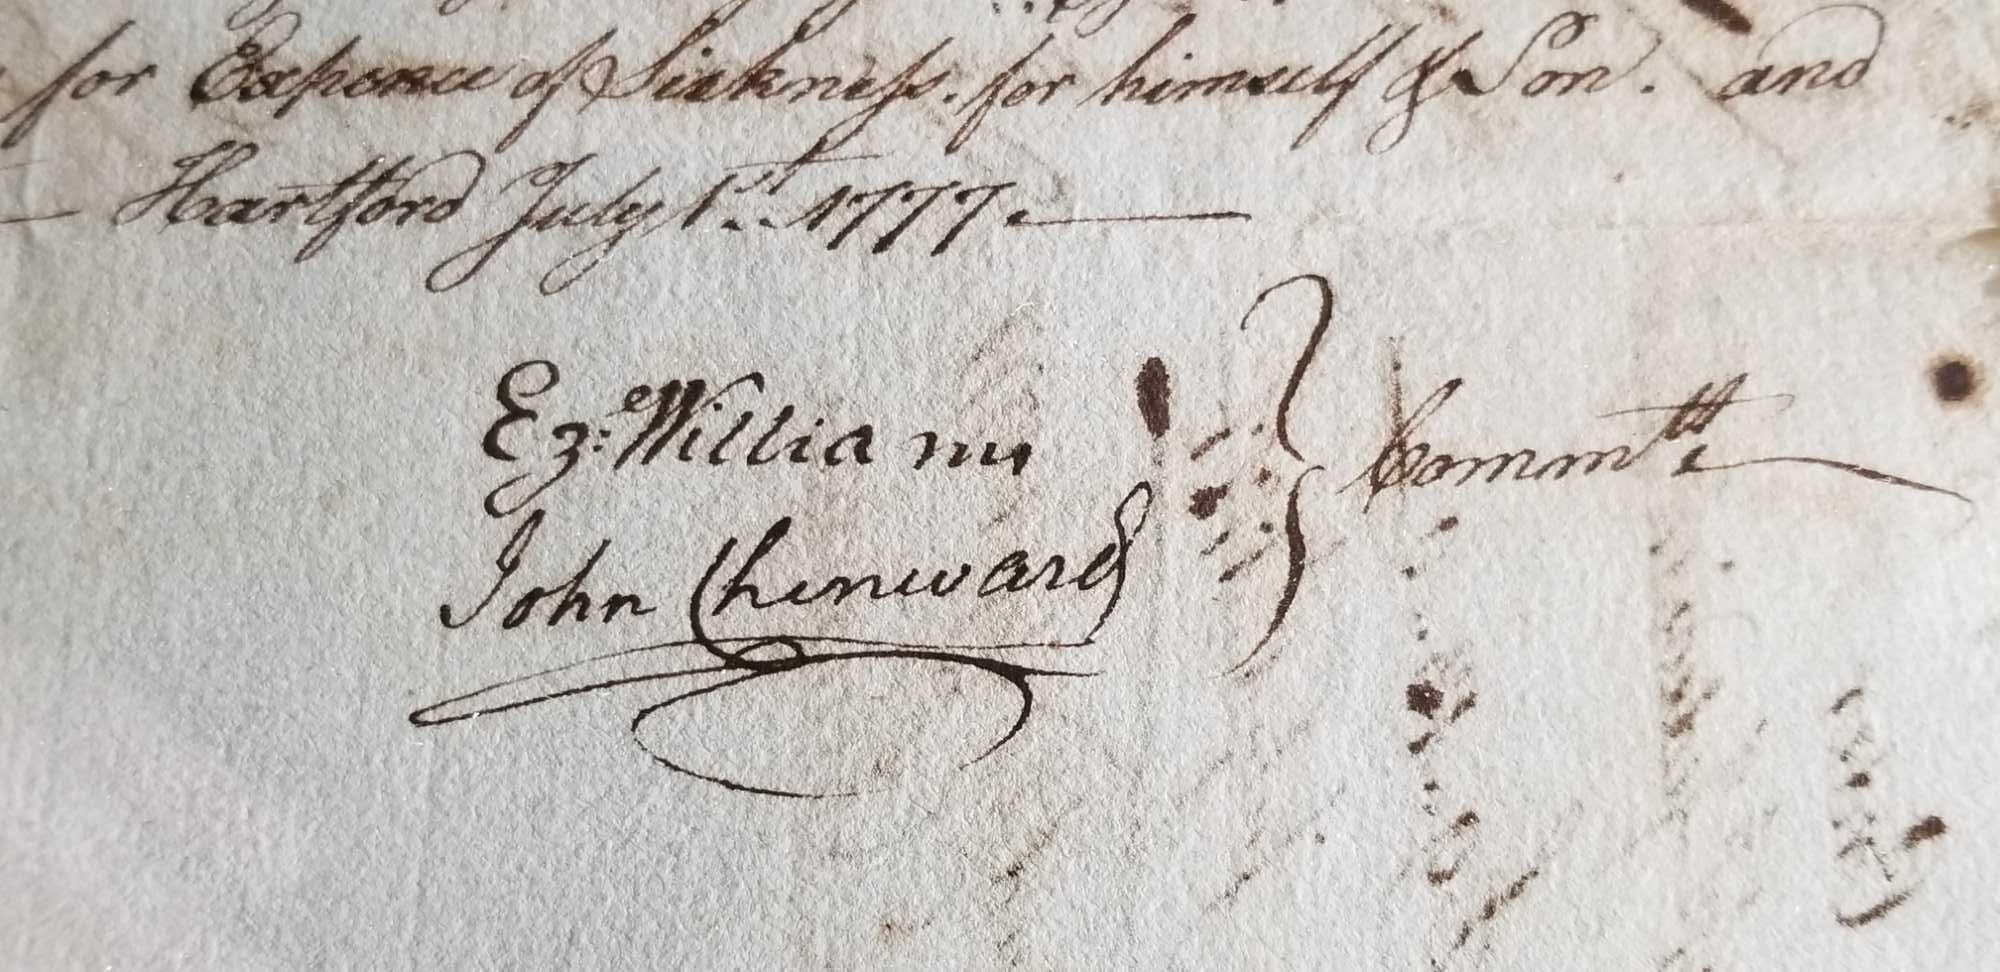 Revolutionary War Autographed Manuscript